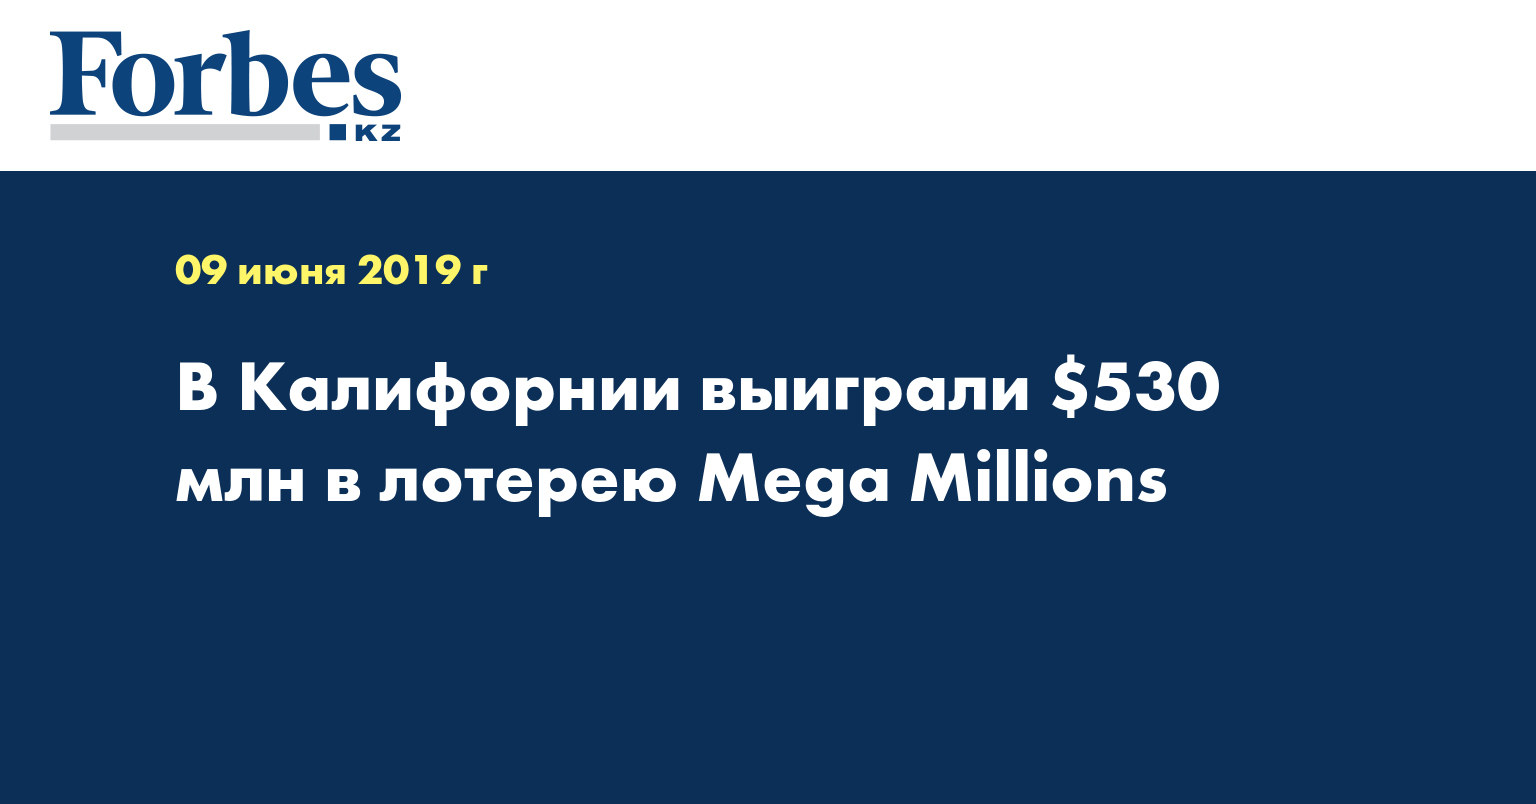 В Калифорнии выиграли $530 млн в лотерею Mega Millions